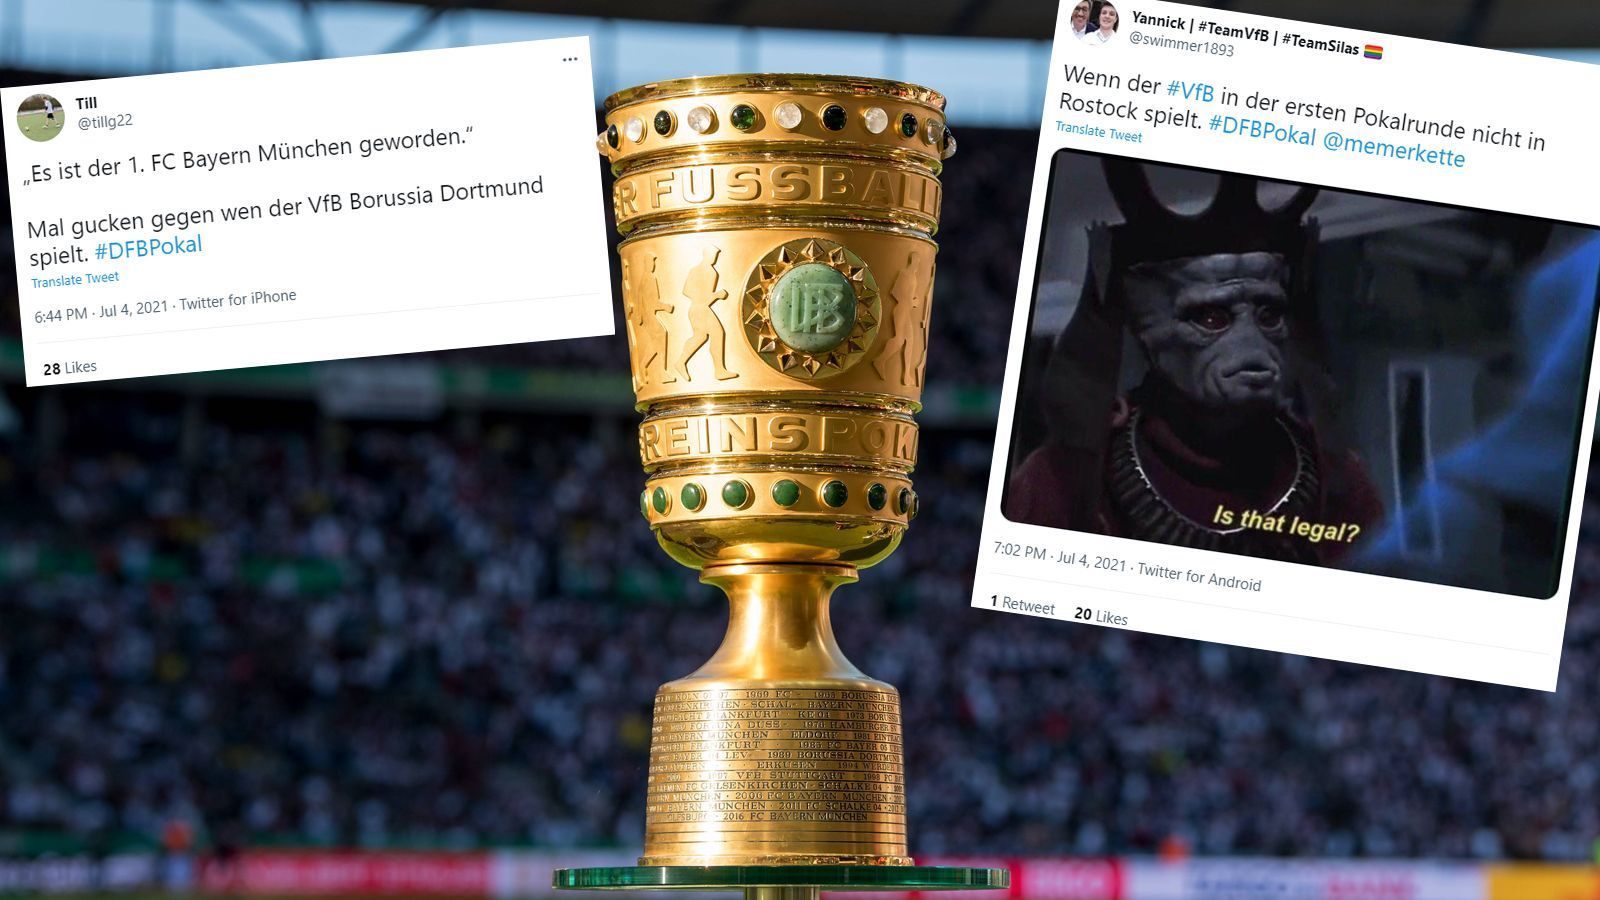 
                <strong>Die Netzreaktionen zur Pokalauslosung</strong><br>
                Die Erstrundenpartien für den DFB-Pokal 2021/22 stehen fest. Während ein Versprecher ausgerechnet beim Namen des Rekordmeisters im Netz für Belustigung sorgt, feiern Stuttgart und Rostock das Ende ihres Fluchs. Die Netzreaktionen zur Auslosung.
              